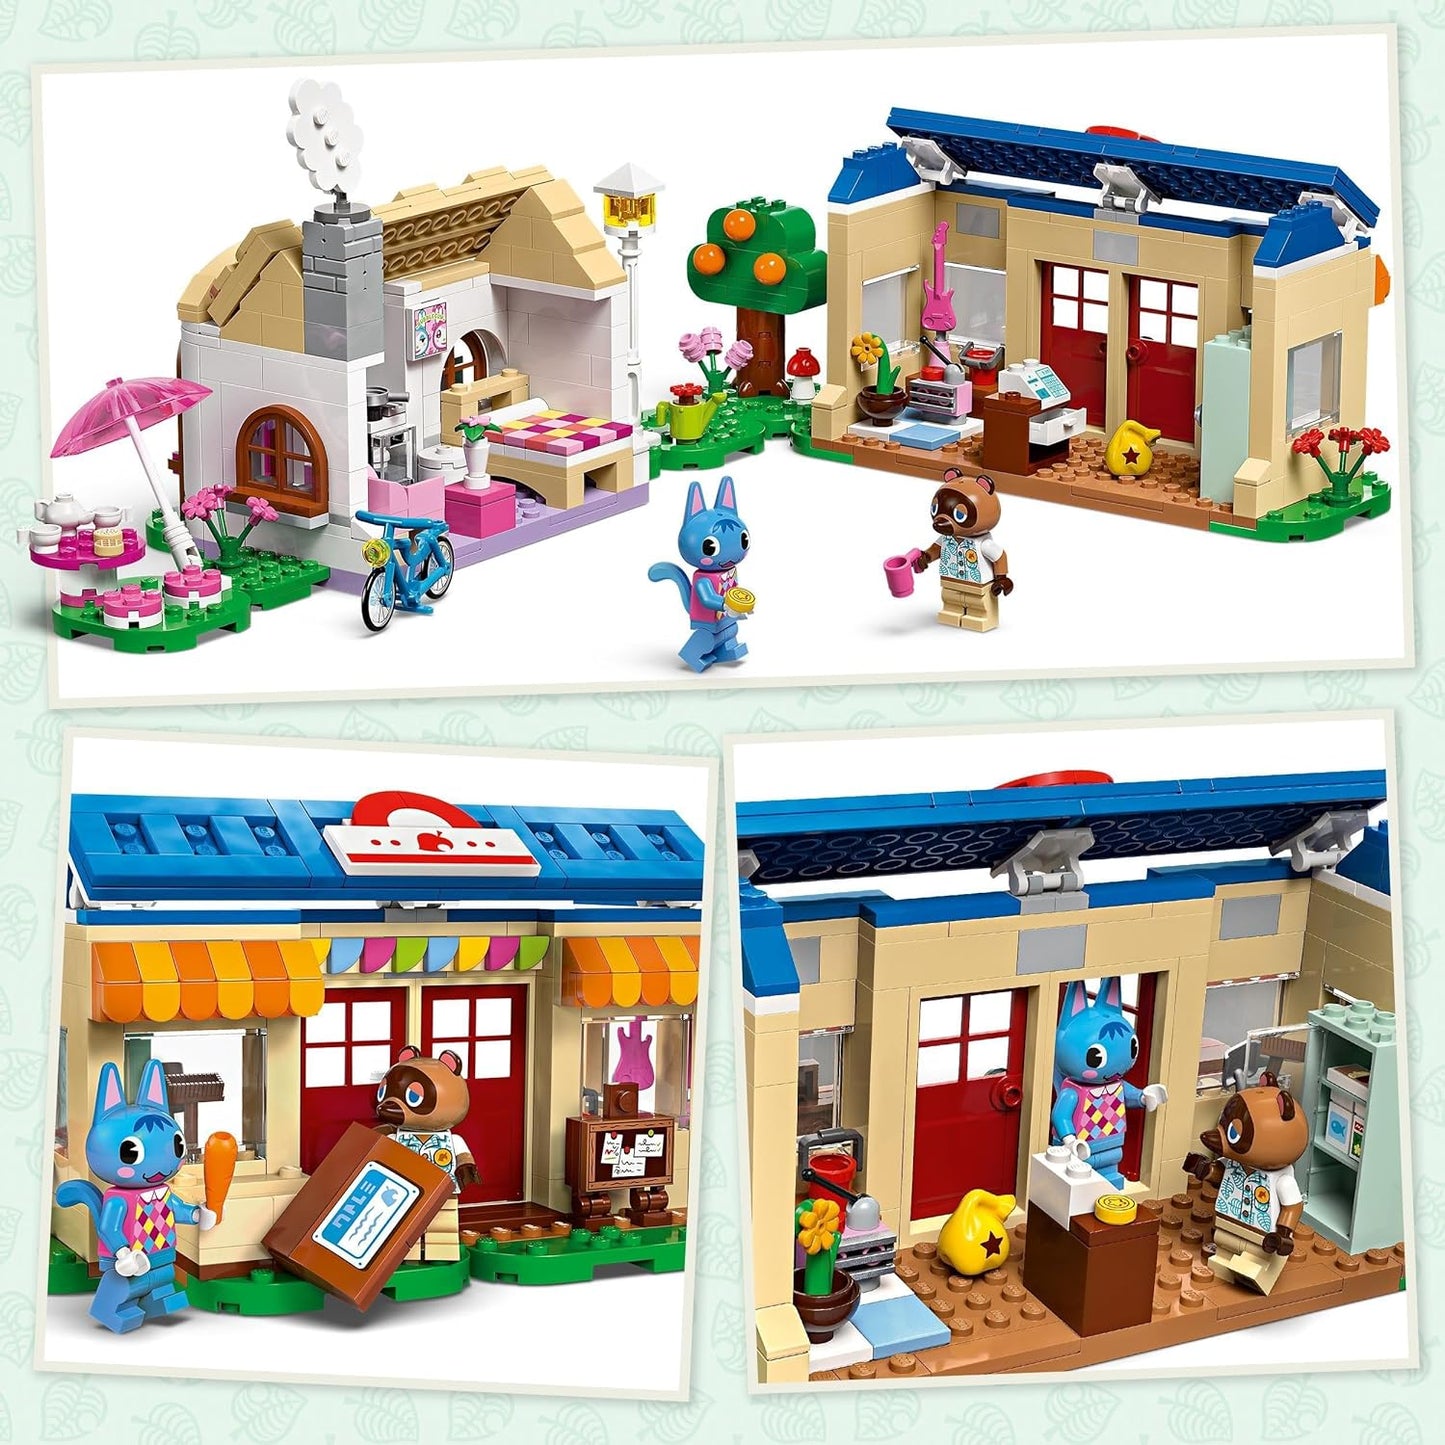 LEGO Animal Crossing Nook’s Cranny & Rosie’s House Brinquedo de construção criativo para crianças, meninas e meninos com mais de 7 anos, inclui 2 personagens da série de videogame, ideia de presente de aniversário 77050